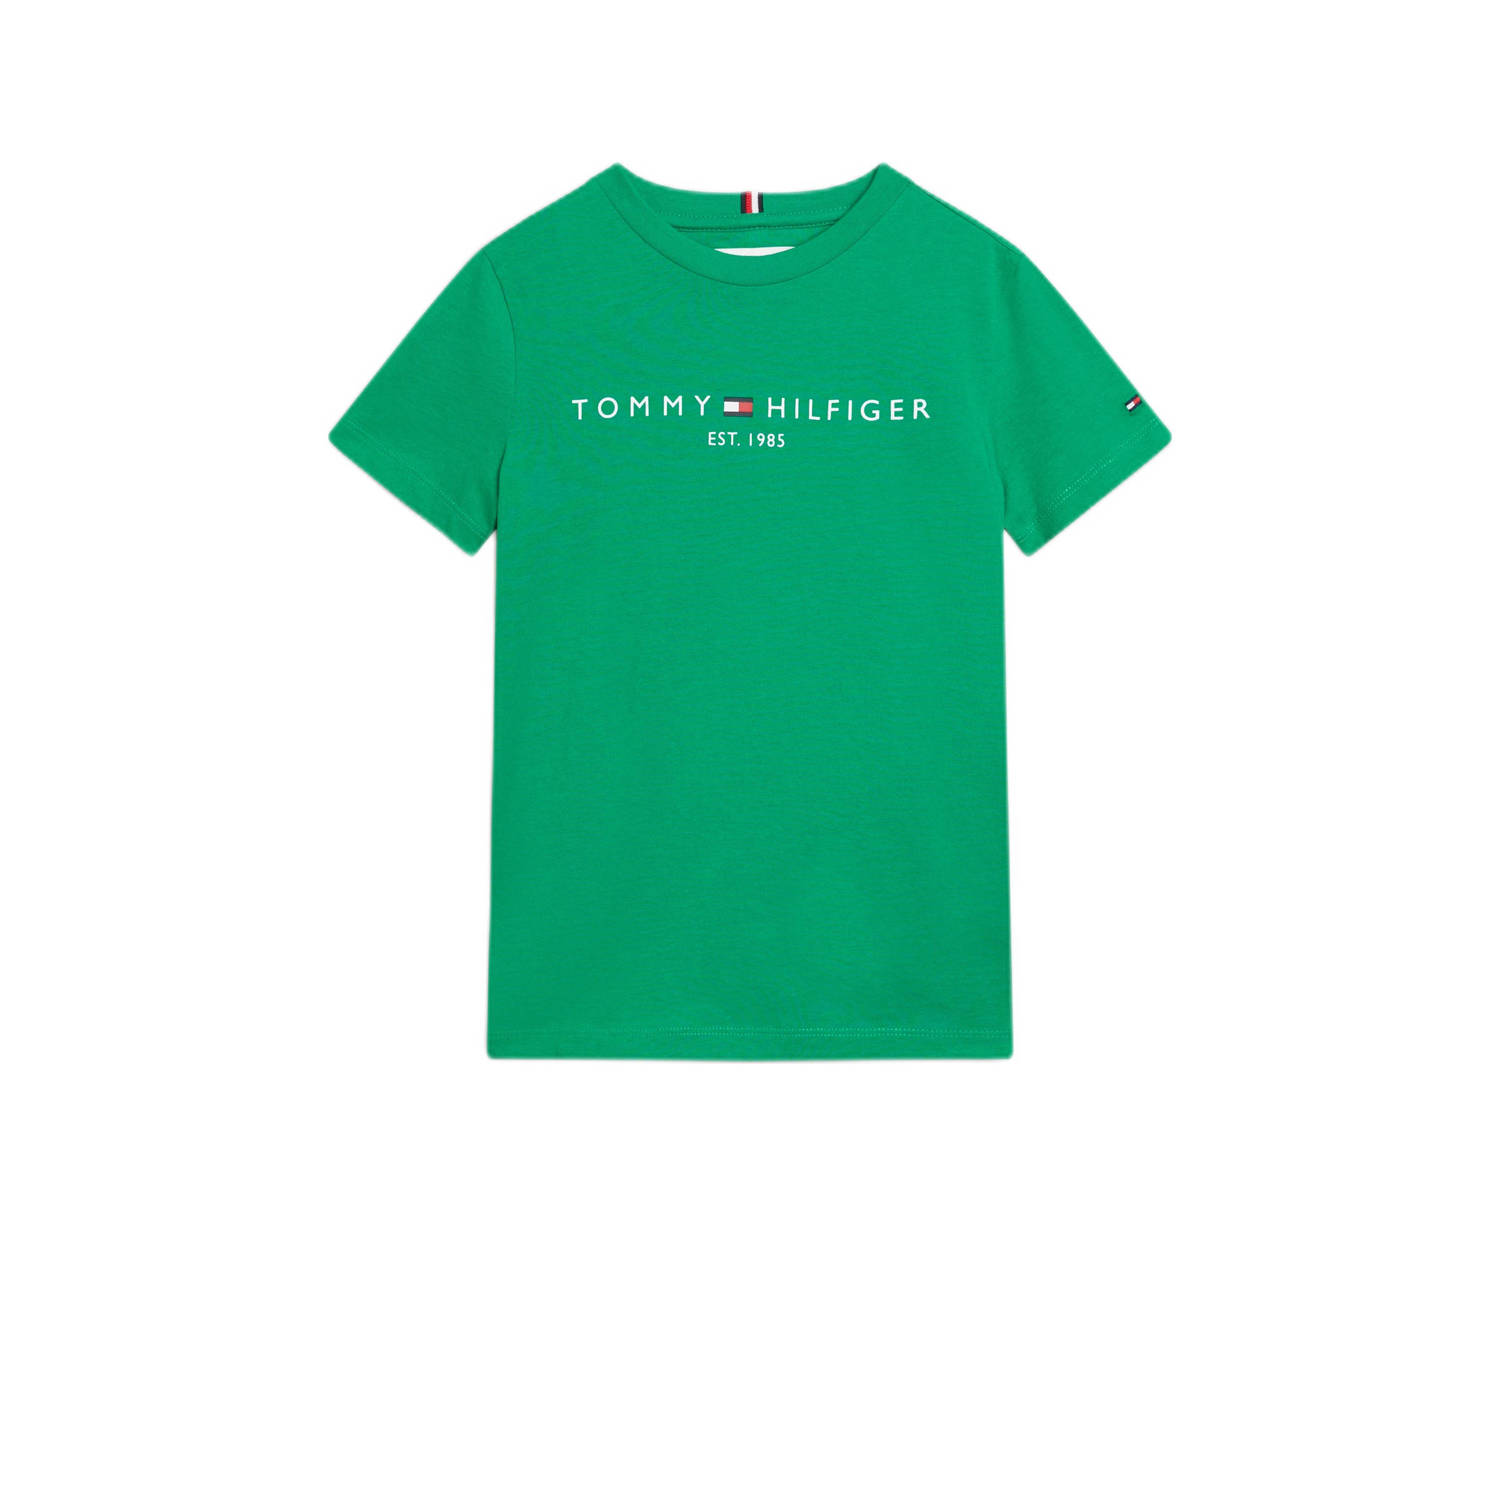 Tommy Hilfiger T-shirt met logo groen Katoen Ronde hals 104